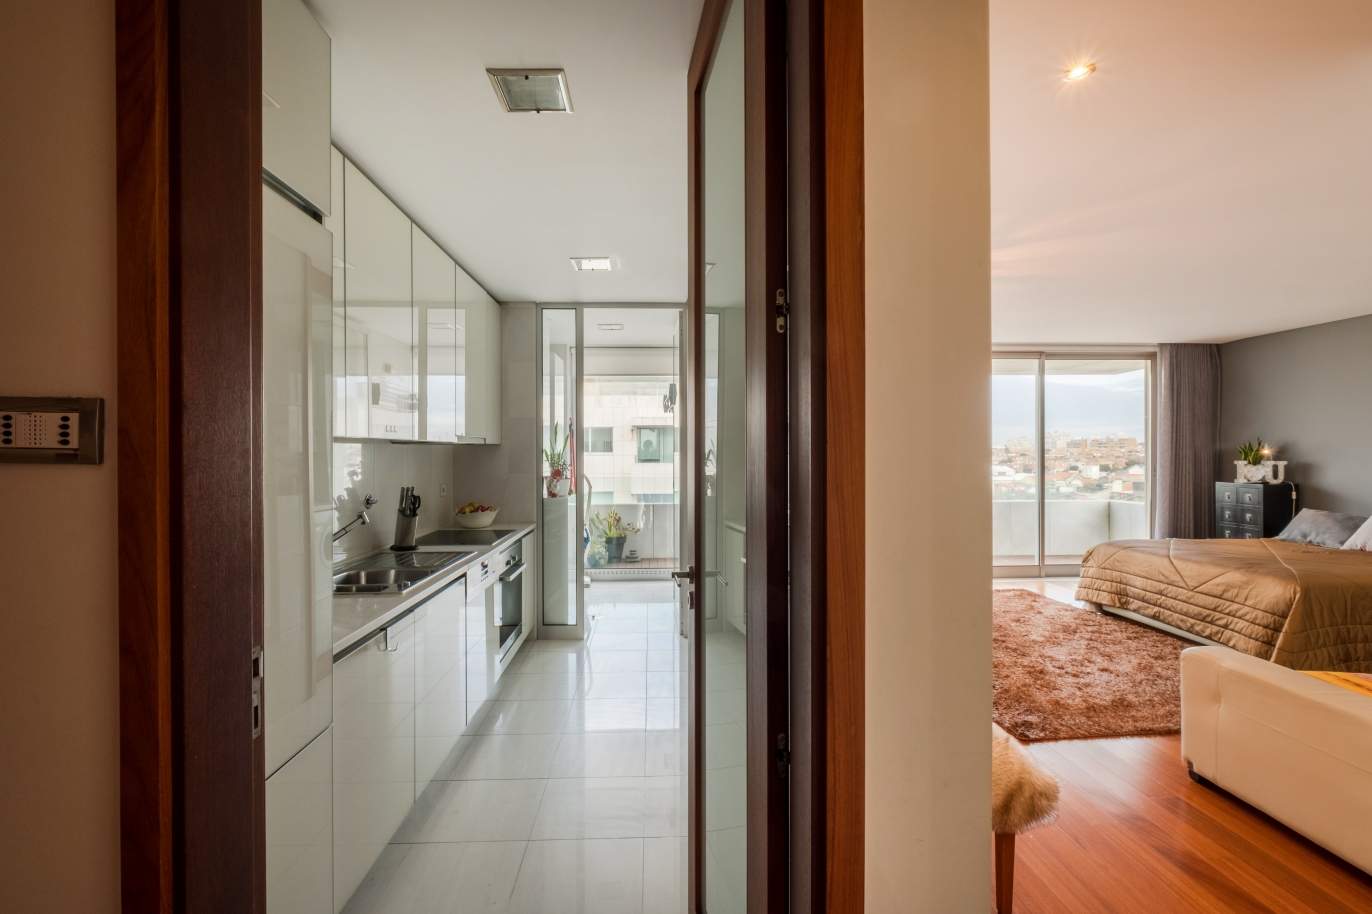 Venda de apartamento moderno, com vistas mar, Leça da Palmeira, Porto_156121